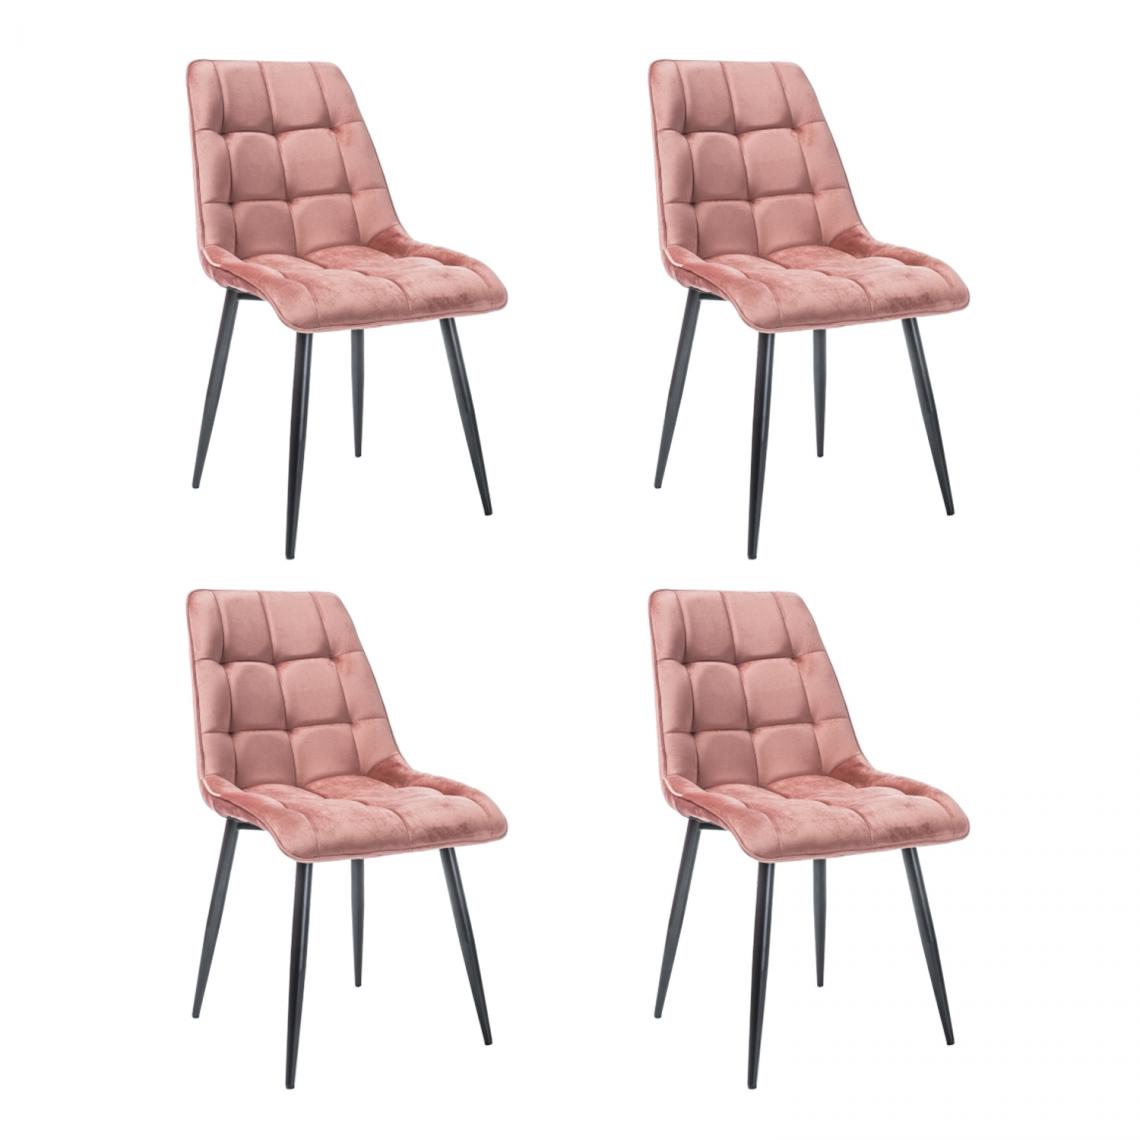 Hucoco - CHIM - Lot de 4 chaises matelassées salle à manger - 89x51x44 cm - Tissu velouté - Pieds en métal - Rose - Chaises